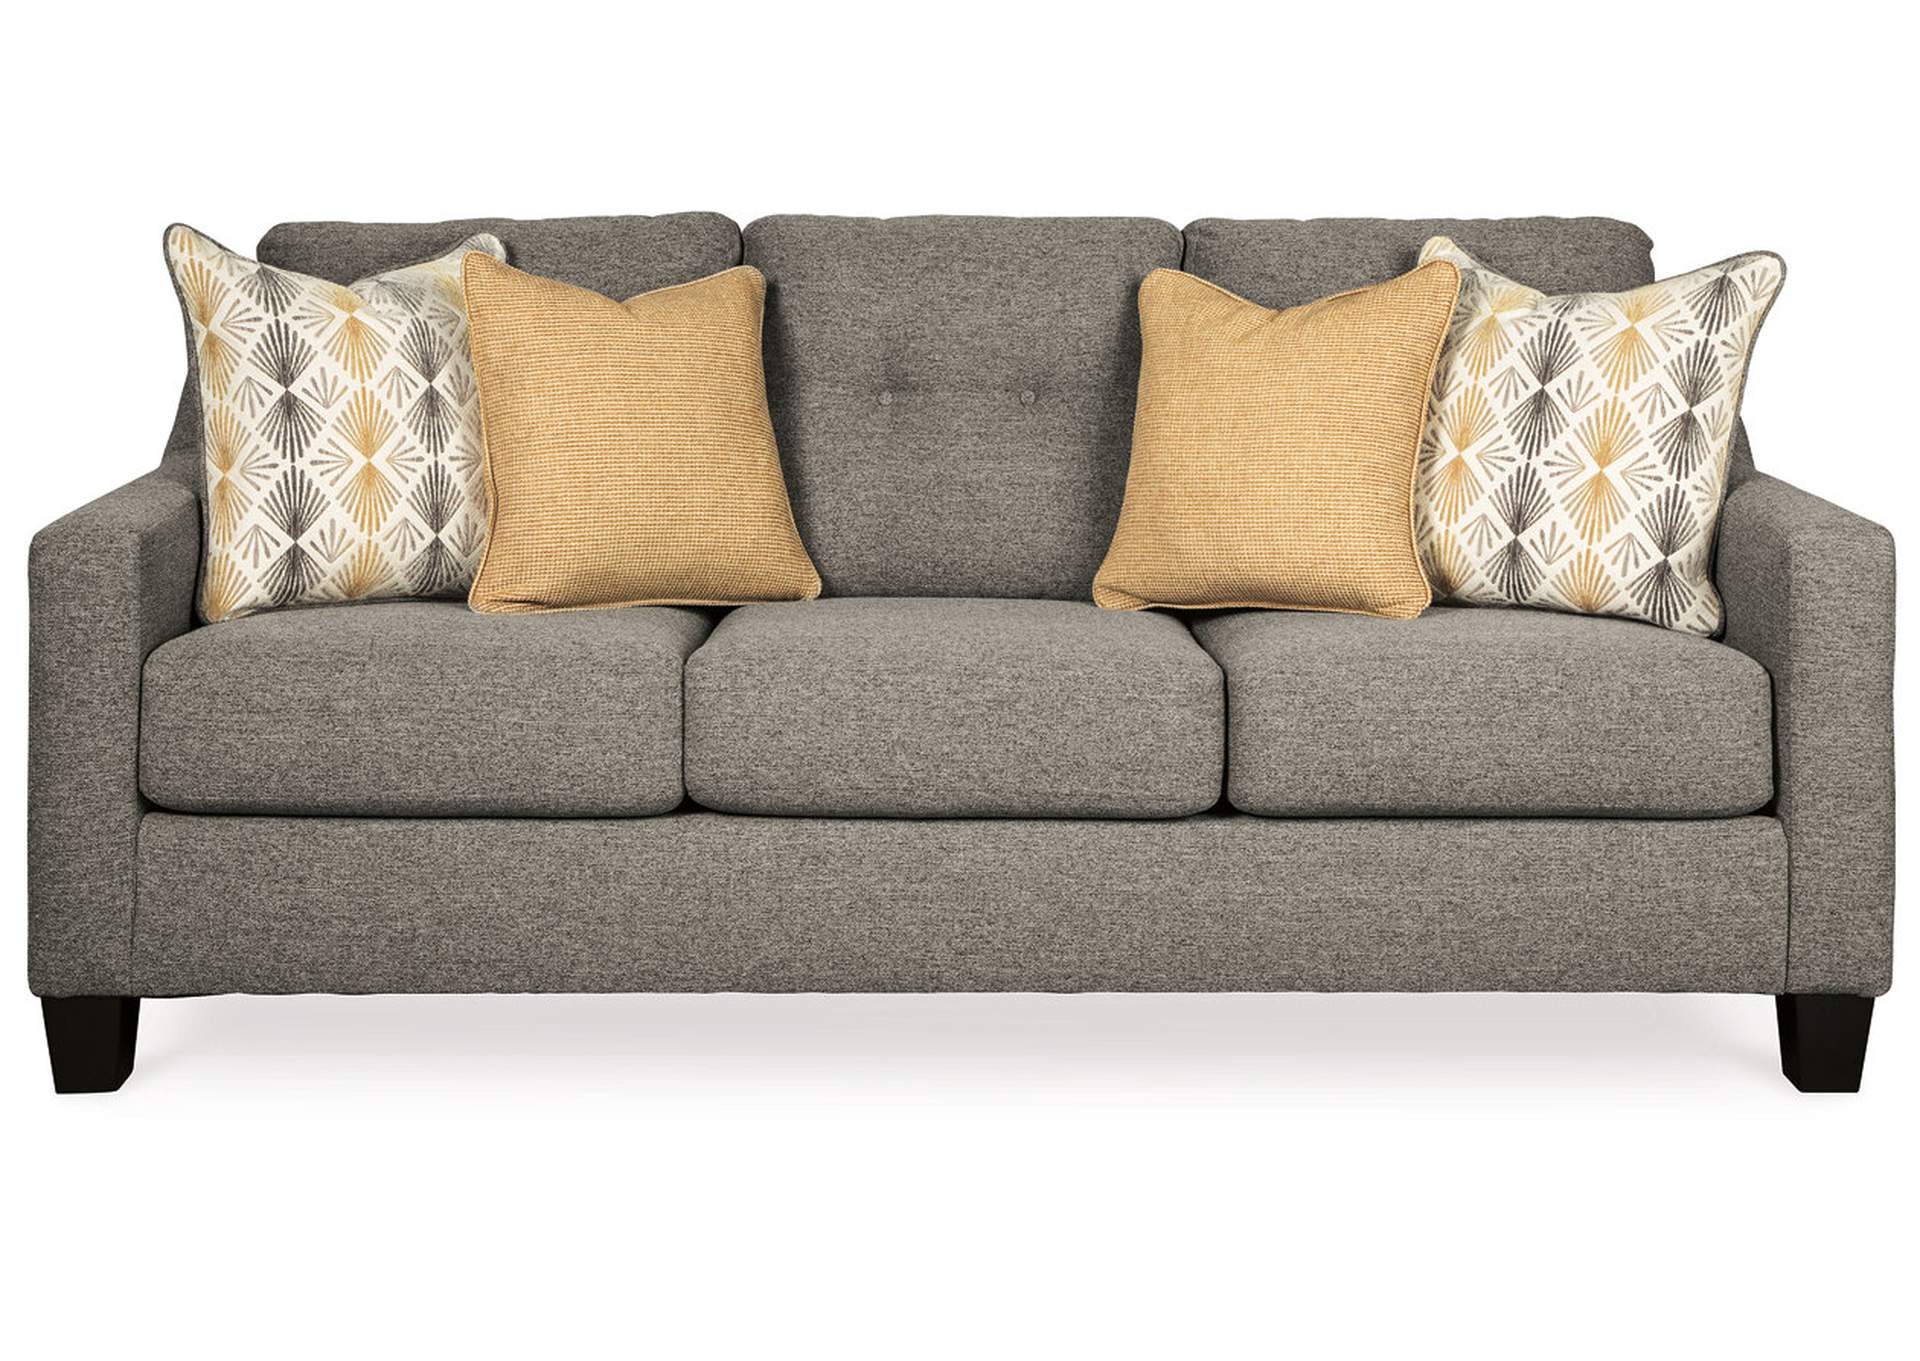 Daylon Sofa,Benchcraft